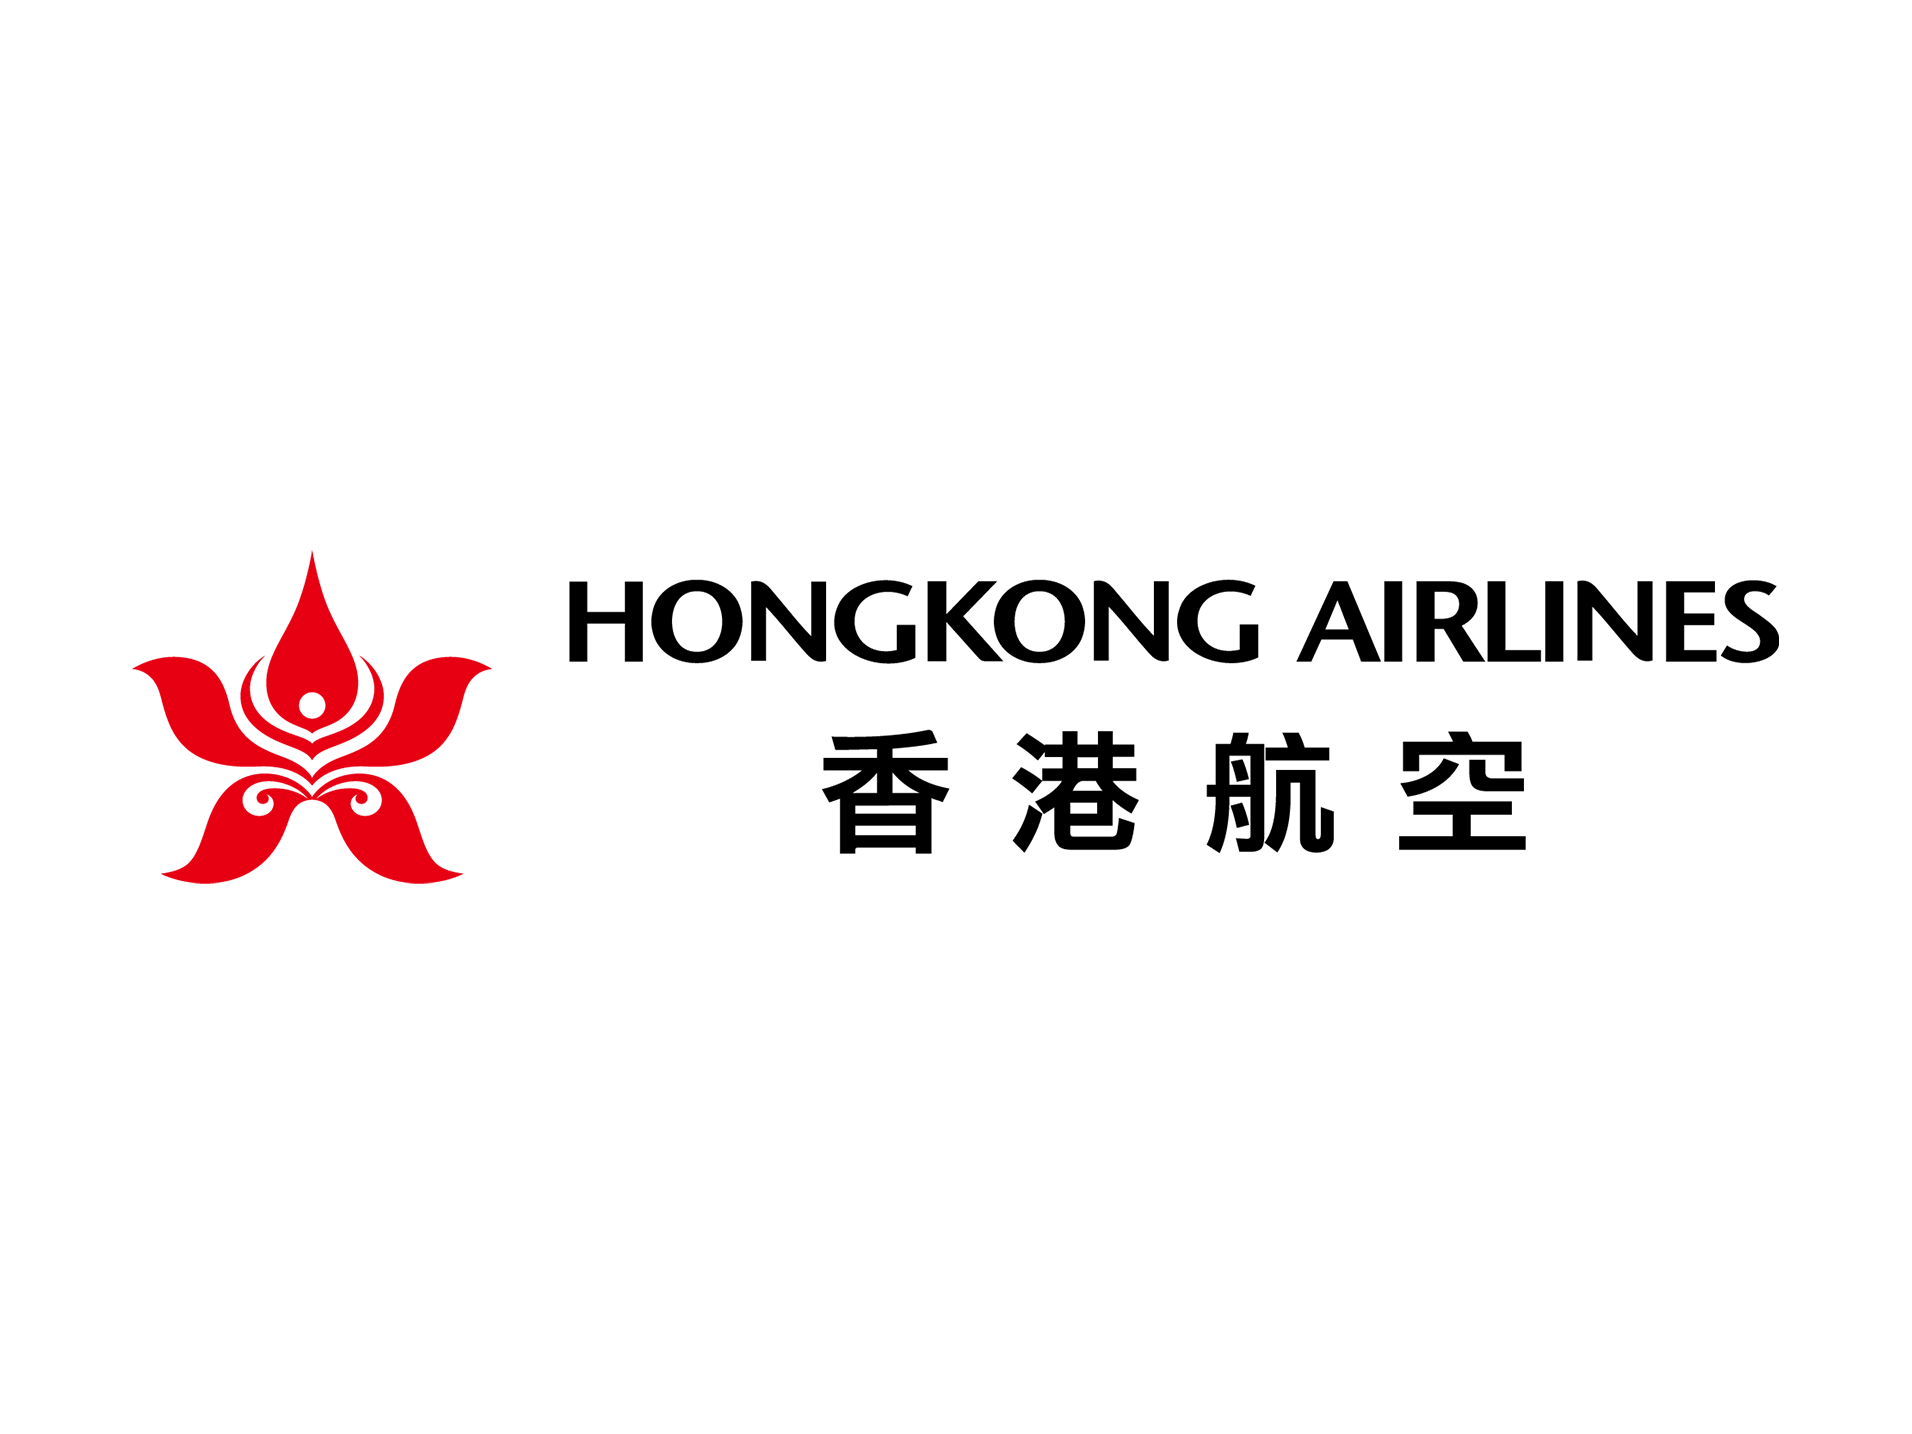 Hong Kong Airlines logo